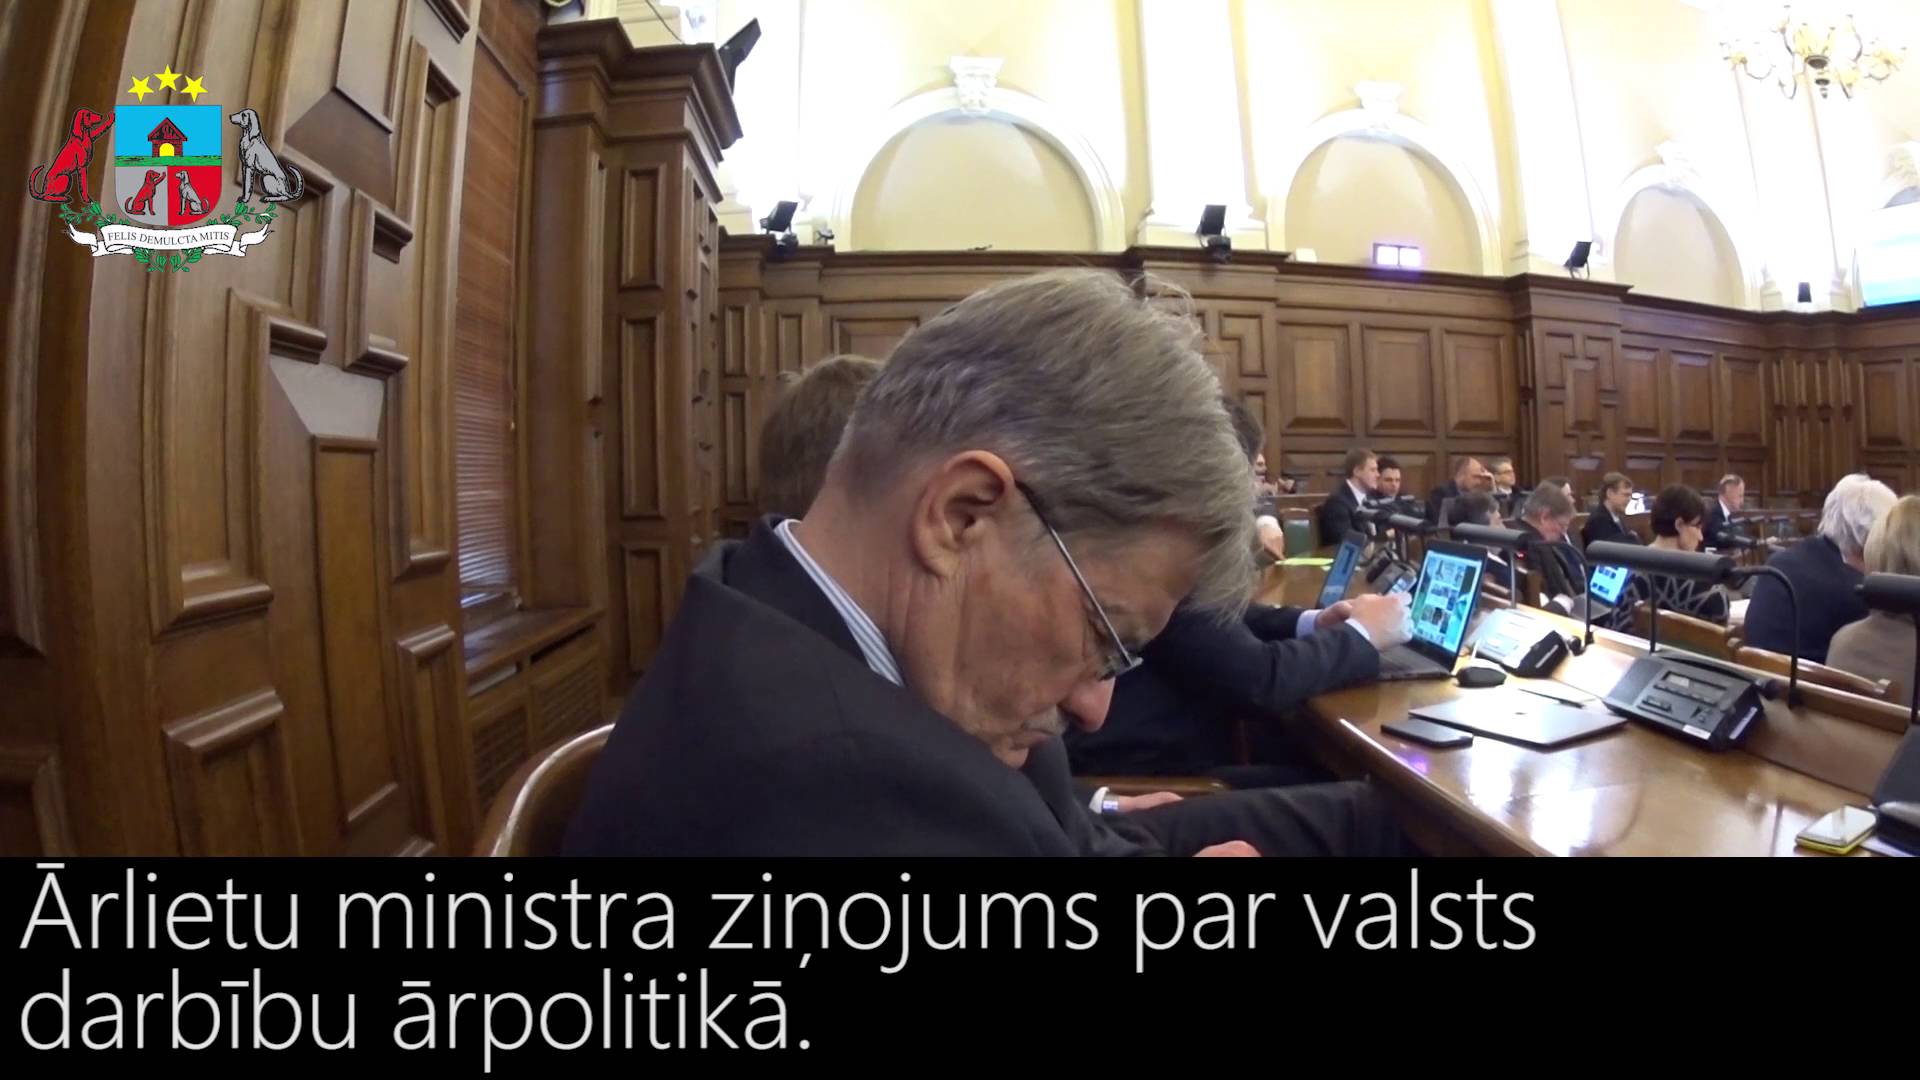 VIDEO: Rinkēviča kungs! Jūs esat Latvijas, nevis Beļģijas vai Krievijas ārlietu ministrs!